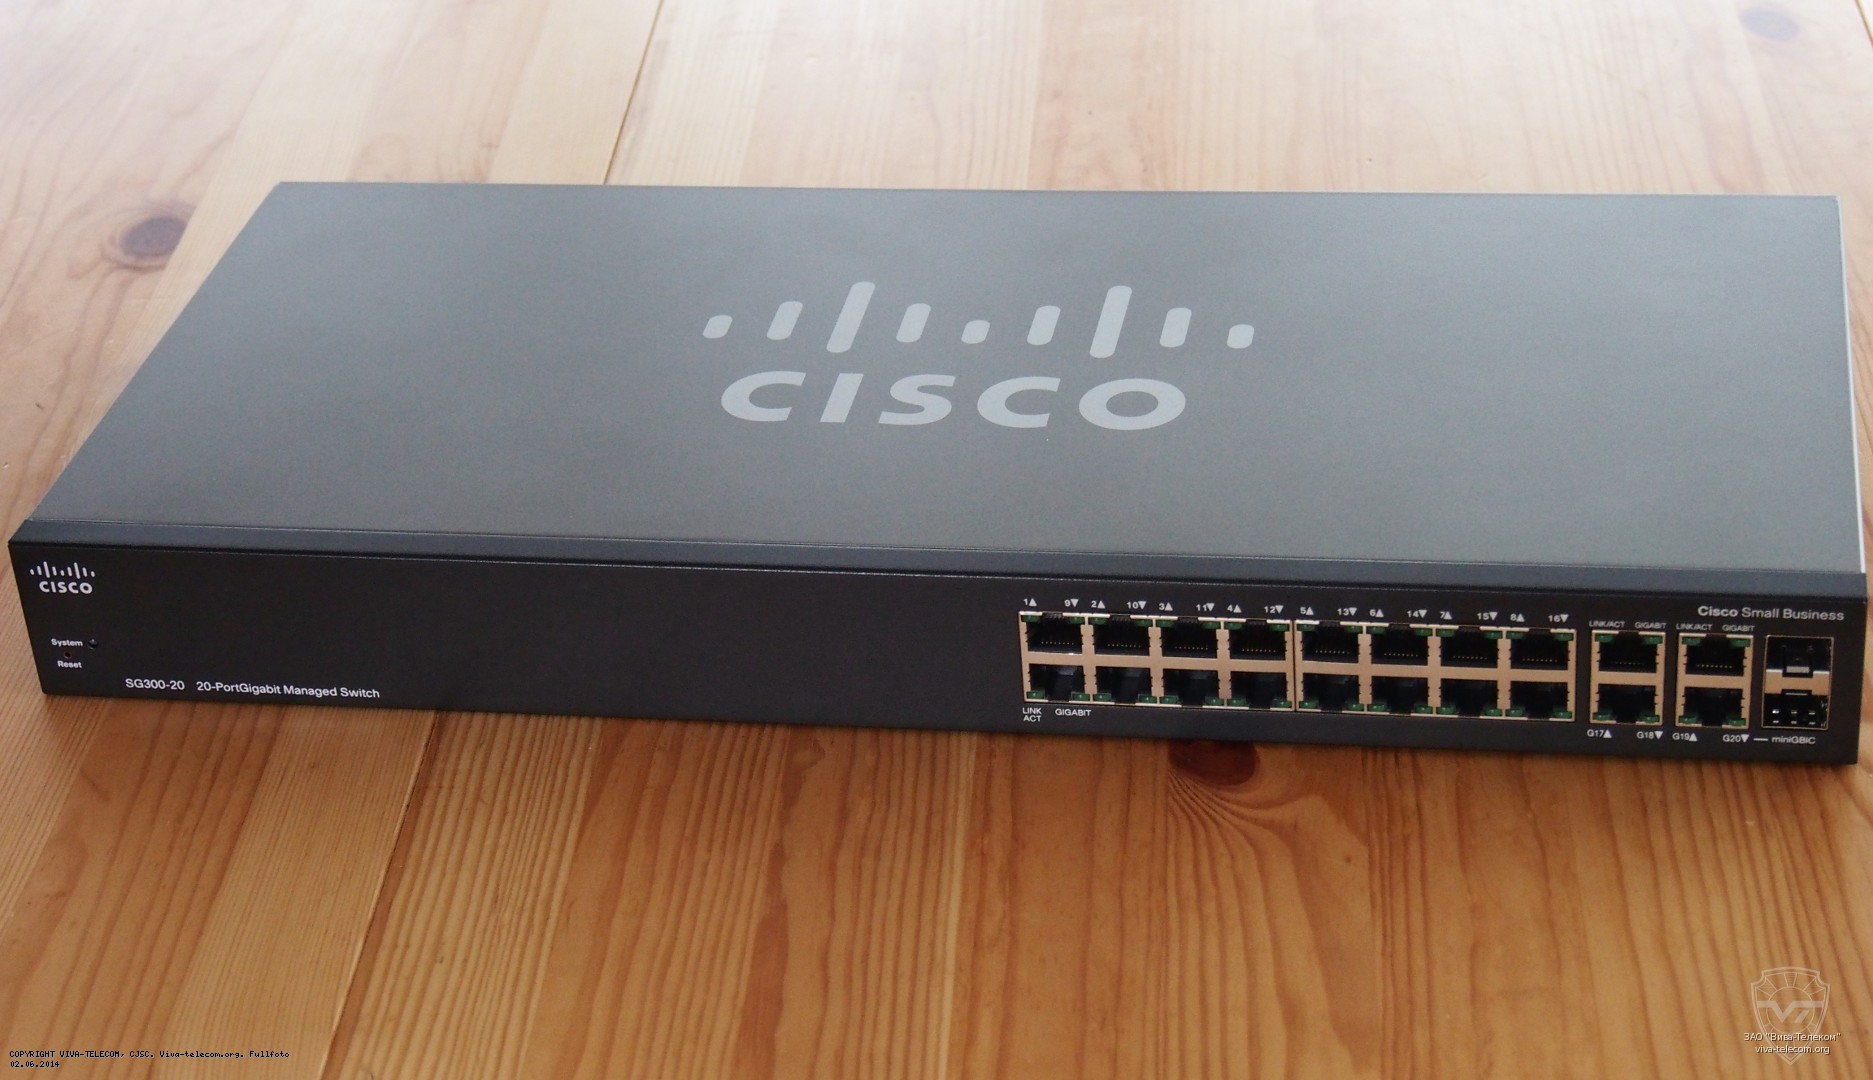   Cisco  300